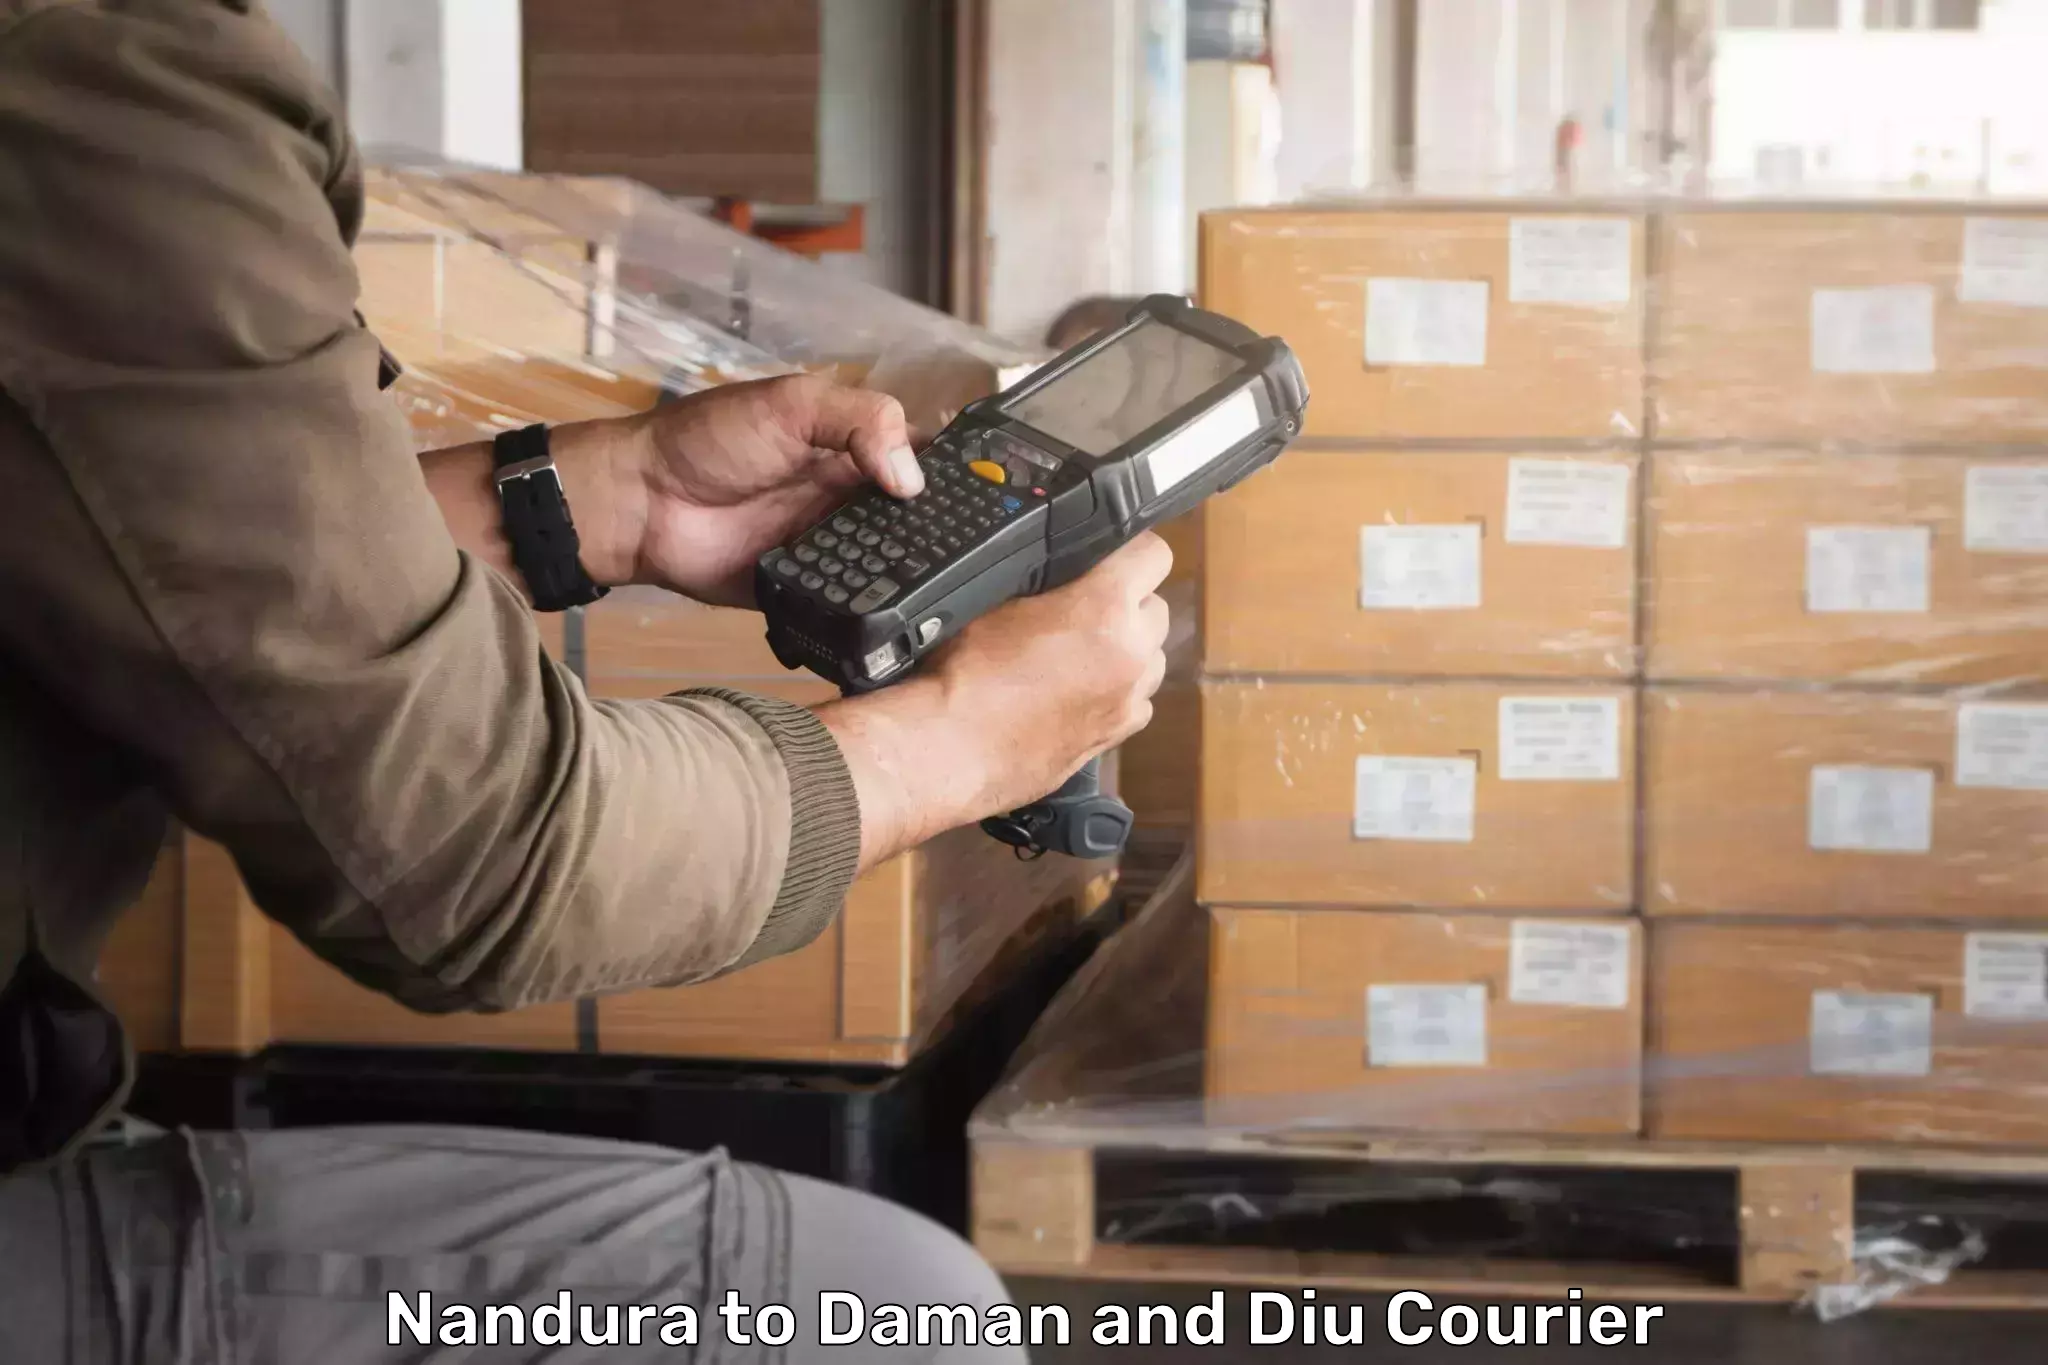 Budget-friendly shipping in Nandura to Diu